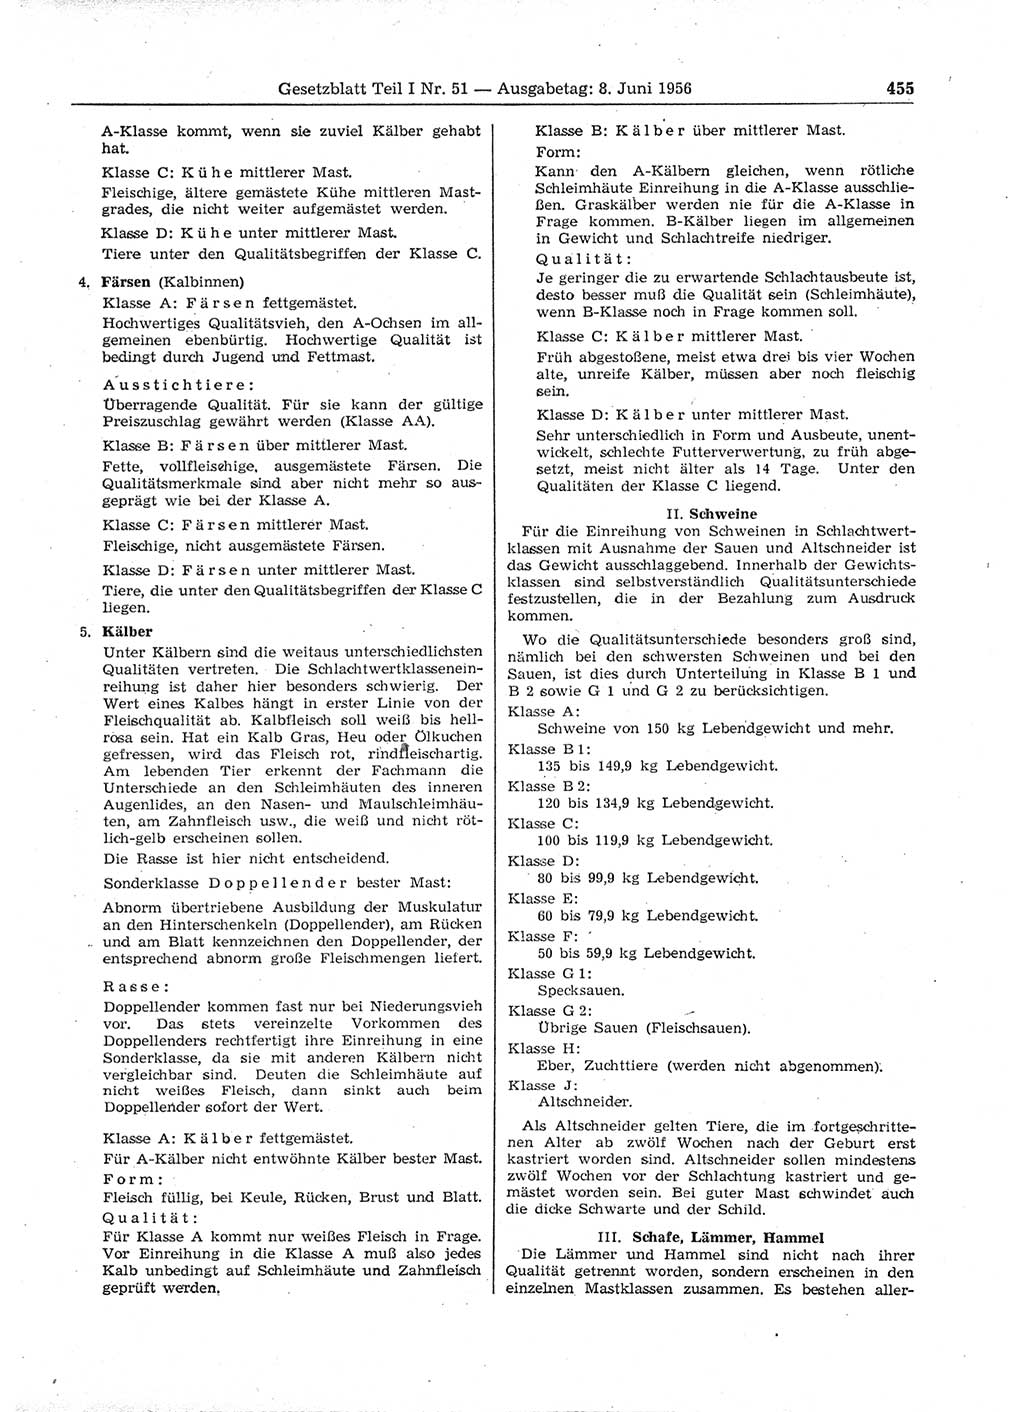 Gesetzblatt (GBl.) der Deutschen Demokratischen Republik (DDR) Teil Ⅰ 1956, Seite 455 (GBl. DDR Ⅰ 1956, S. 455)